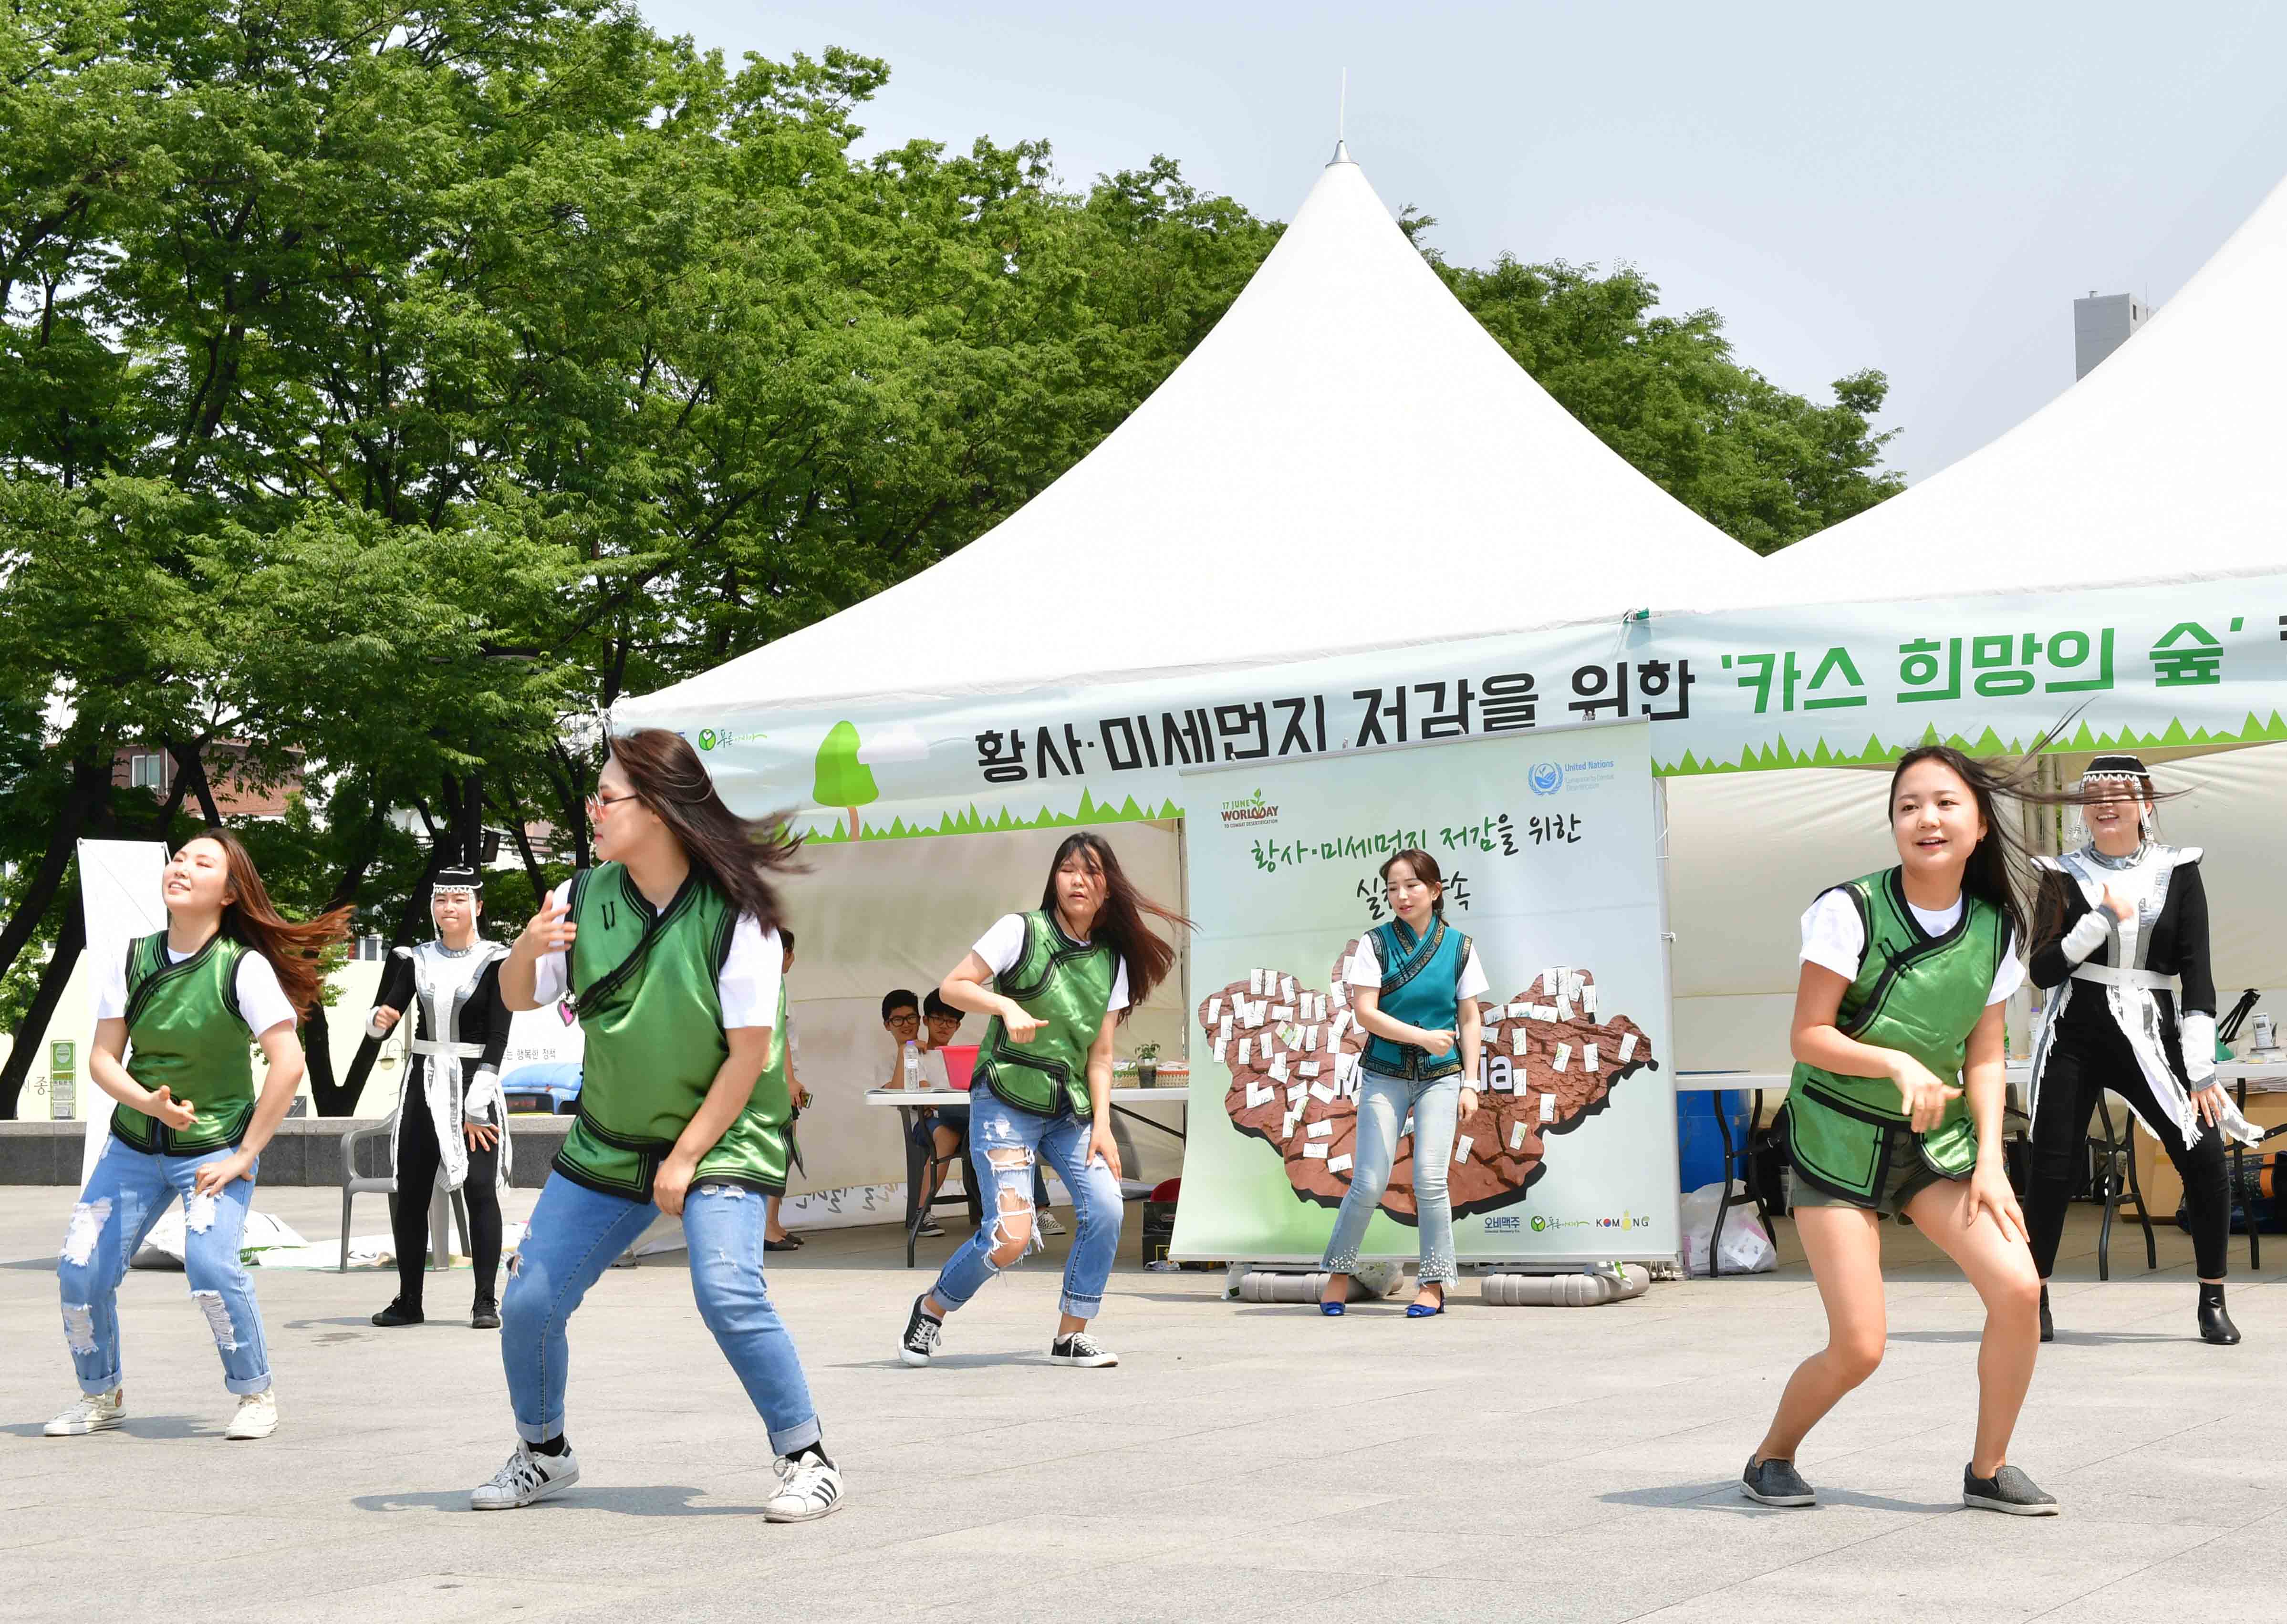 ▲ '카스 희망의 숲' 캠페인에서 몽골 유학생들이 몽골 전통·현대음악에 맞춰 춤추는 플래시몹(flash mob) 공연을 선보이며 환경 캠페인 참여를 독려하는 다채로운 프로그램이 마련됐다. ⓒ 오비맥주